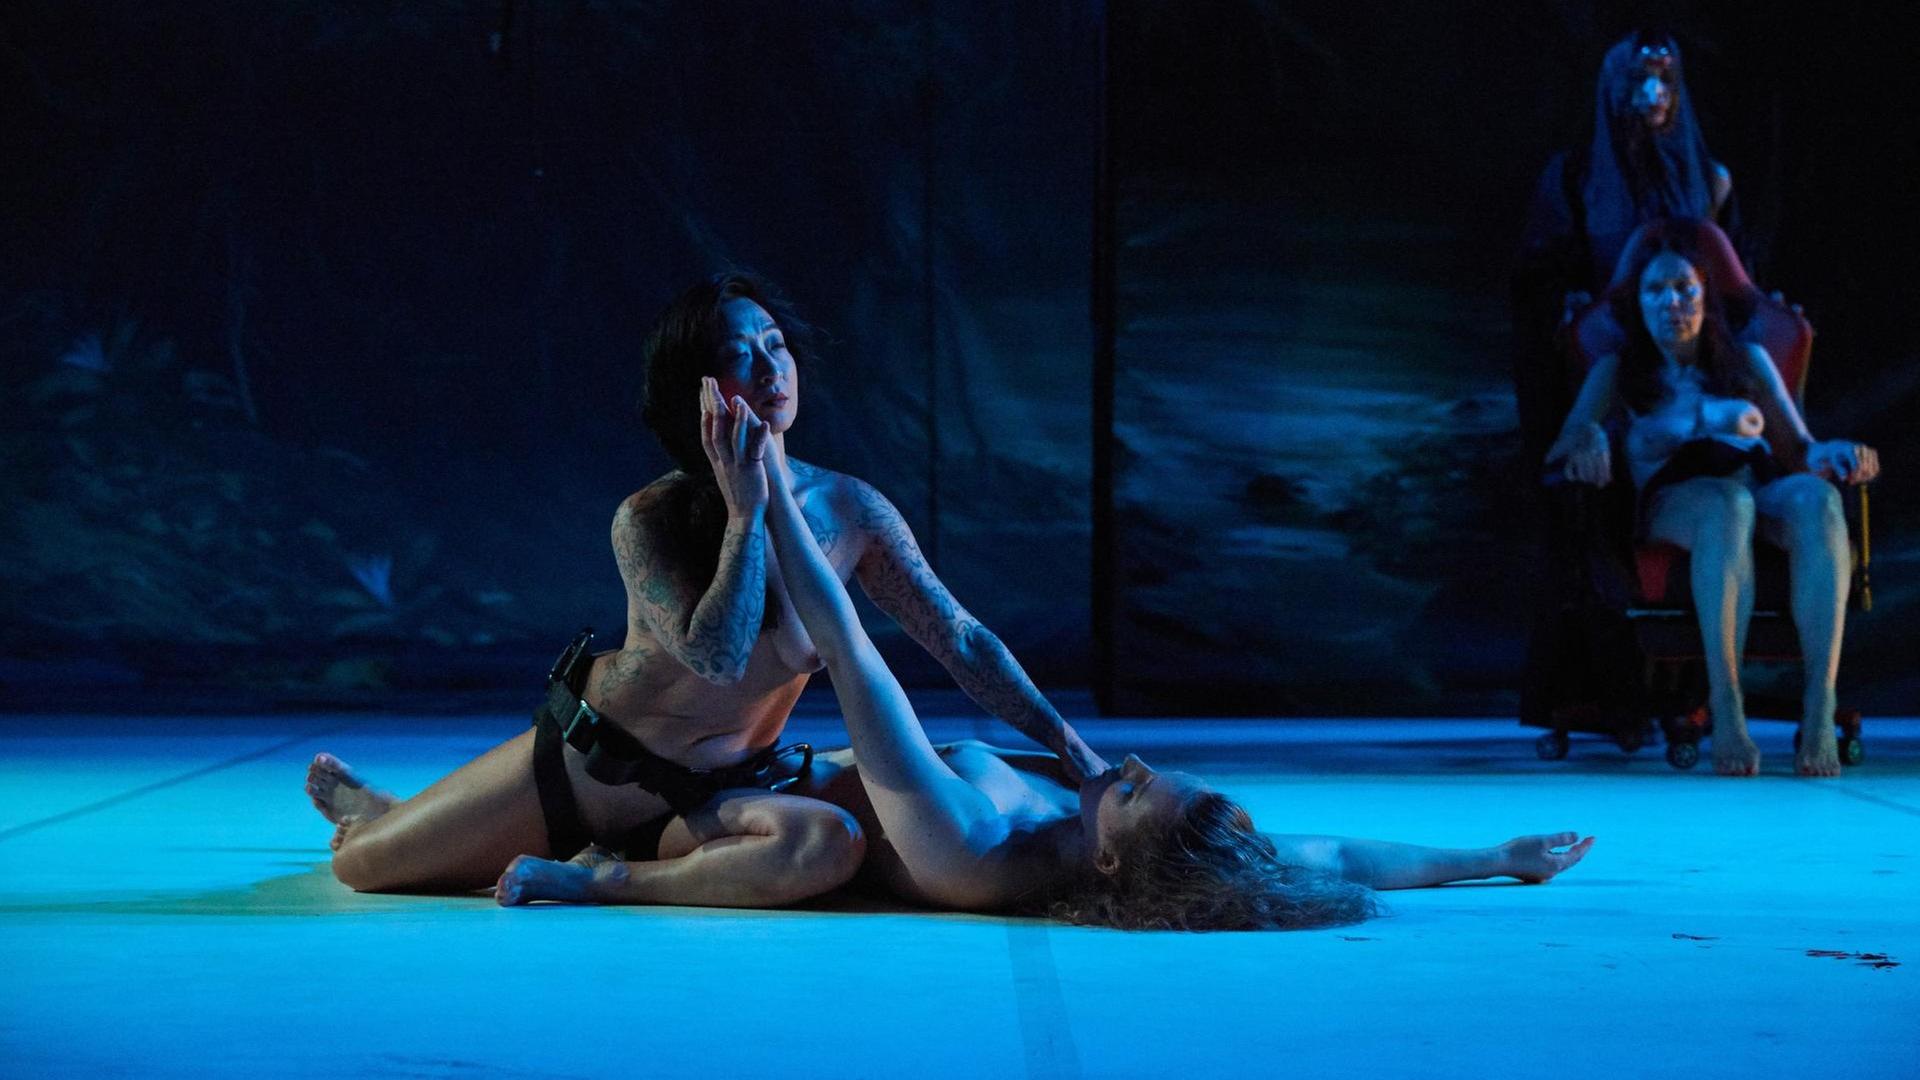 Künstlerinnen knien für das Stück "Tanz" nackt auf der Bühne.